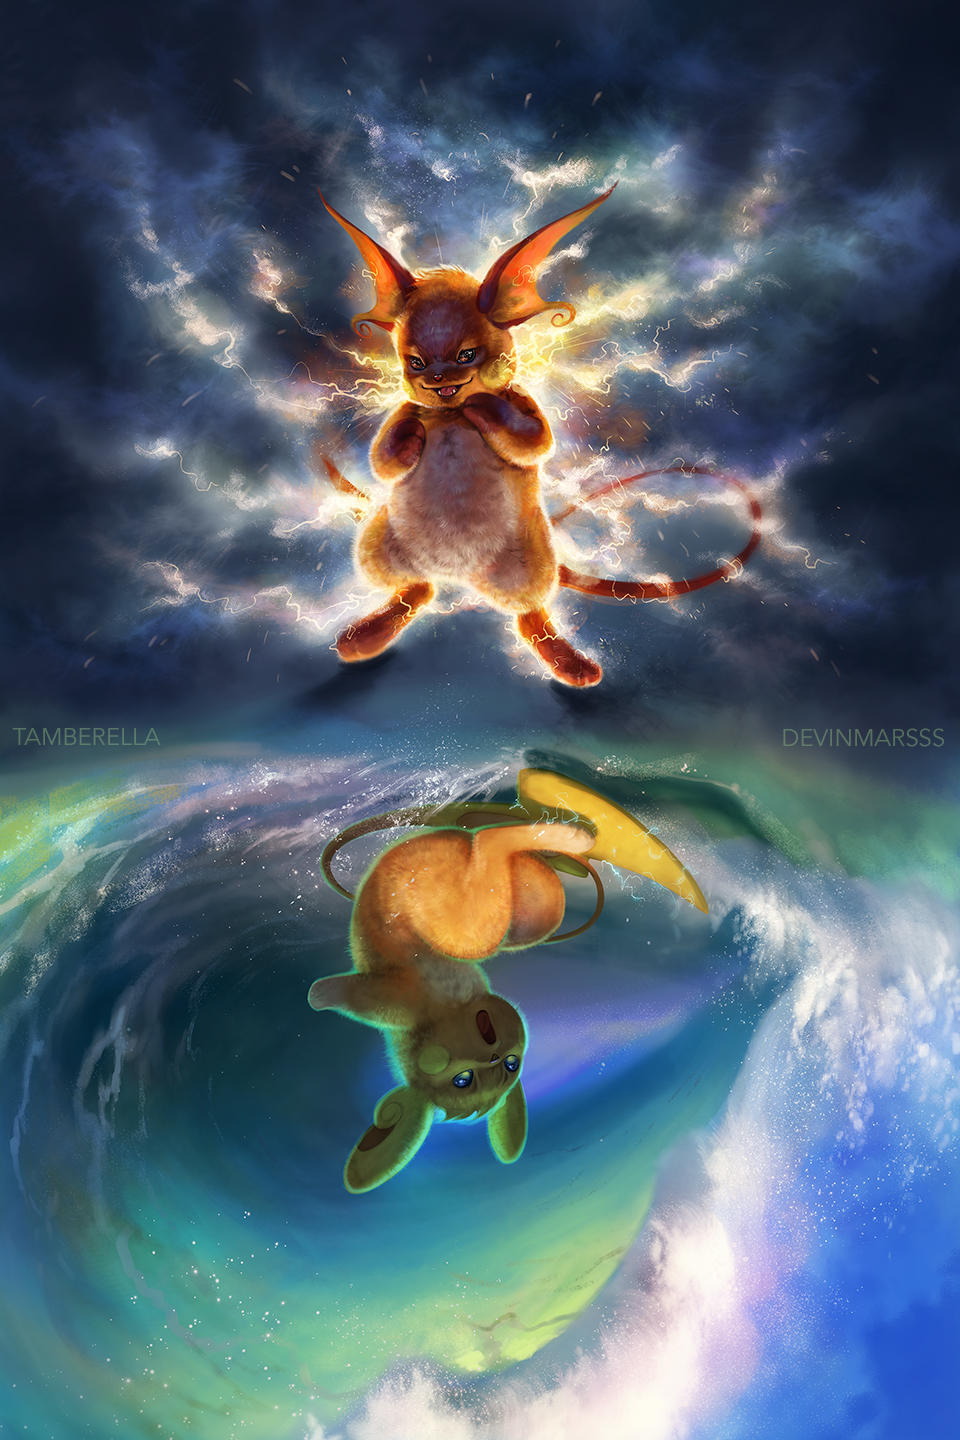 Tuyển tập những bức vẽ Pokemon tuyệt đẹp của họa sĩ tài năng người Mỹ - Ảnh 3.